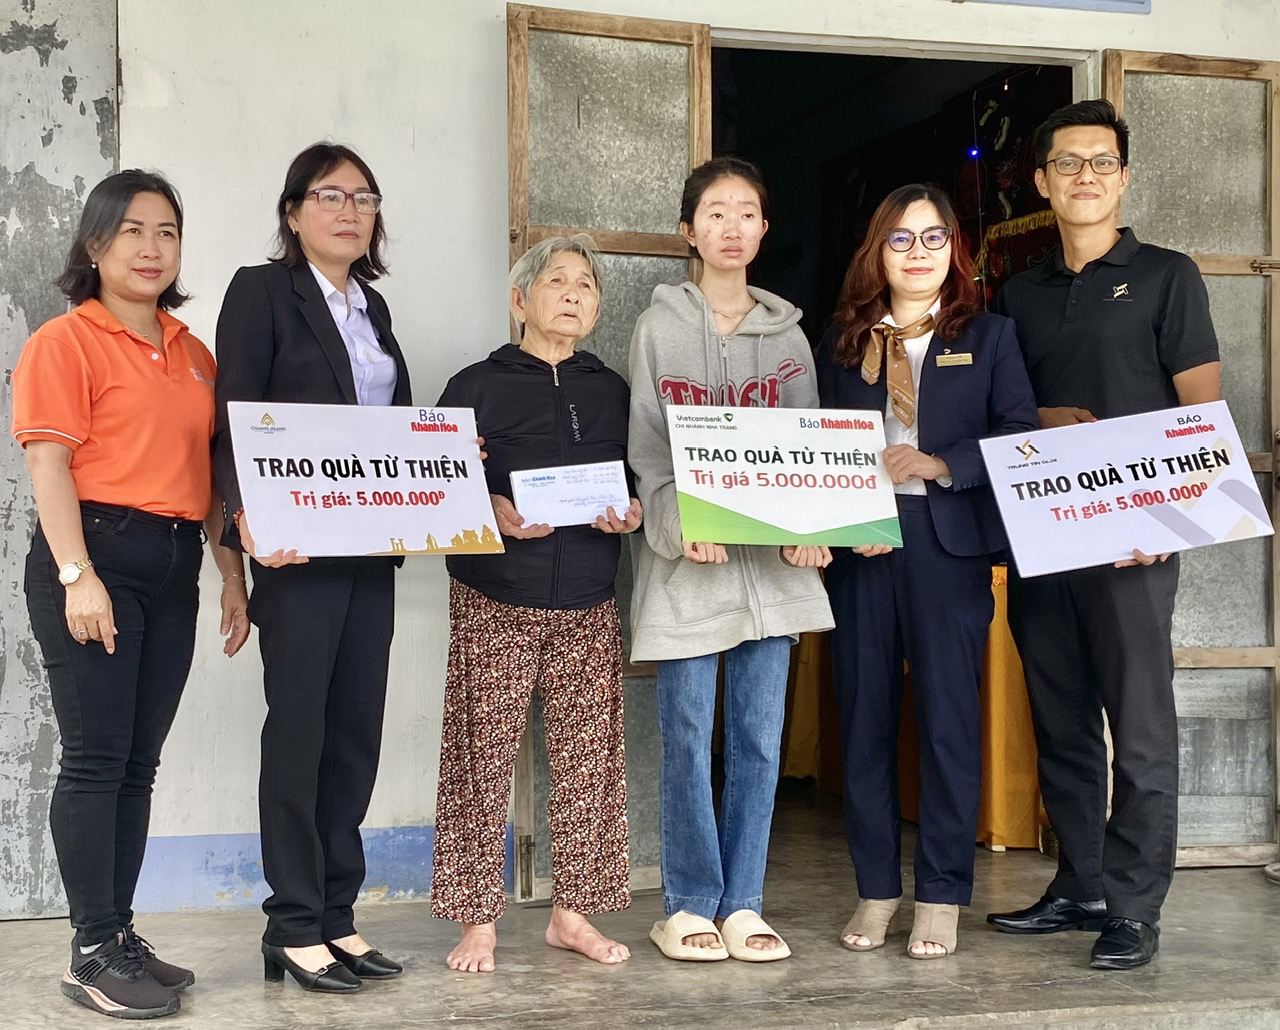 Đại diện các đơn vị trao tiền ủng hộ cho em Huỳnh Thị Kim Phú